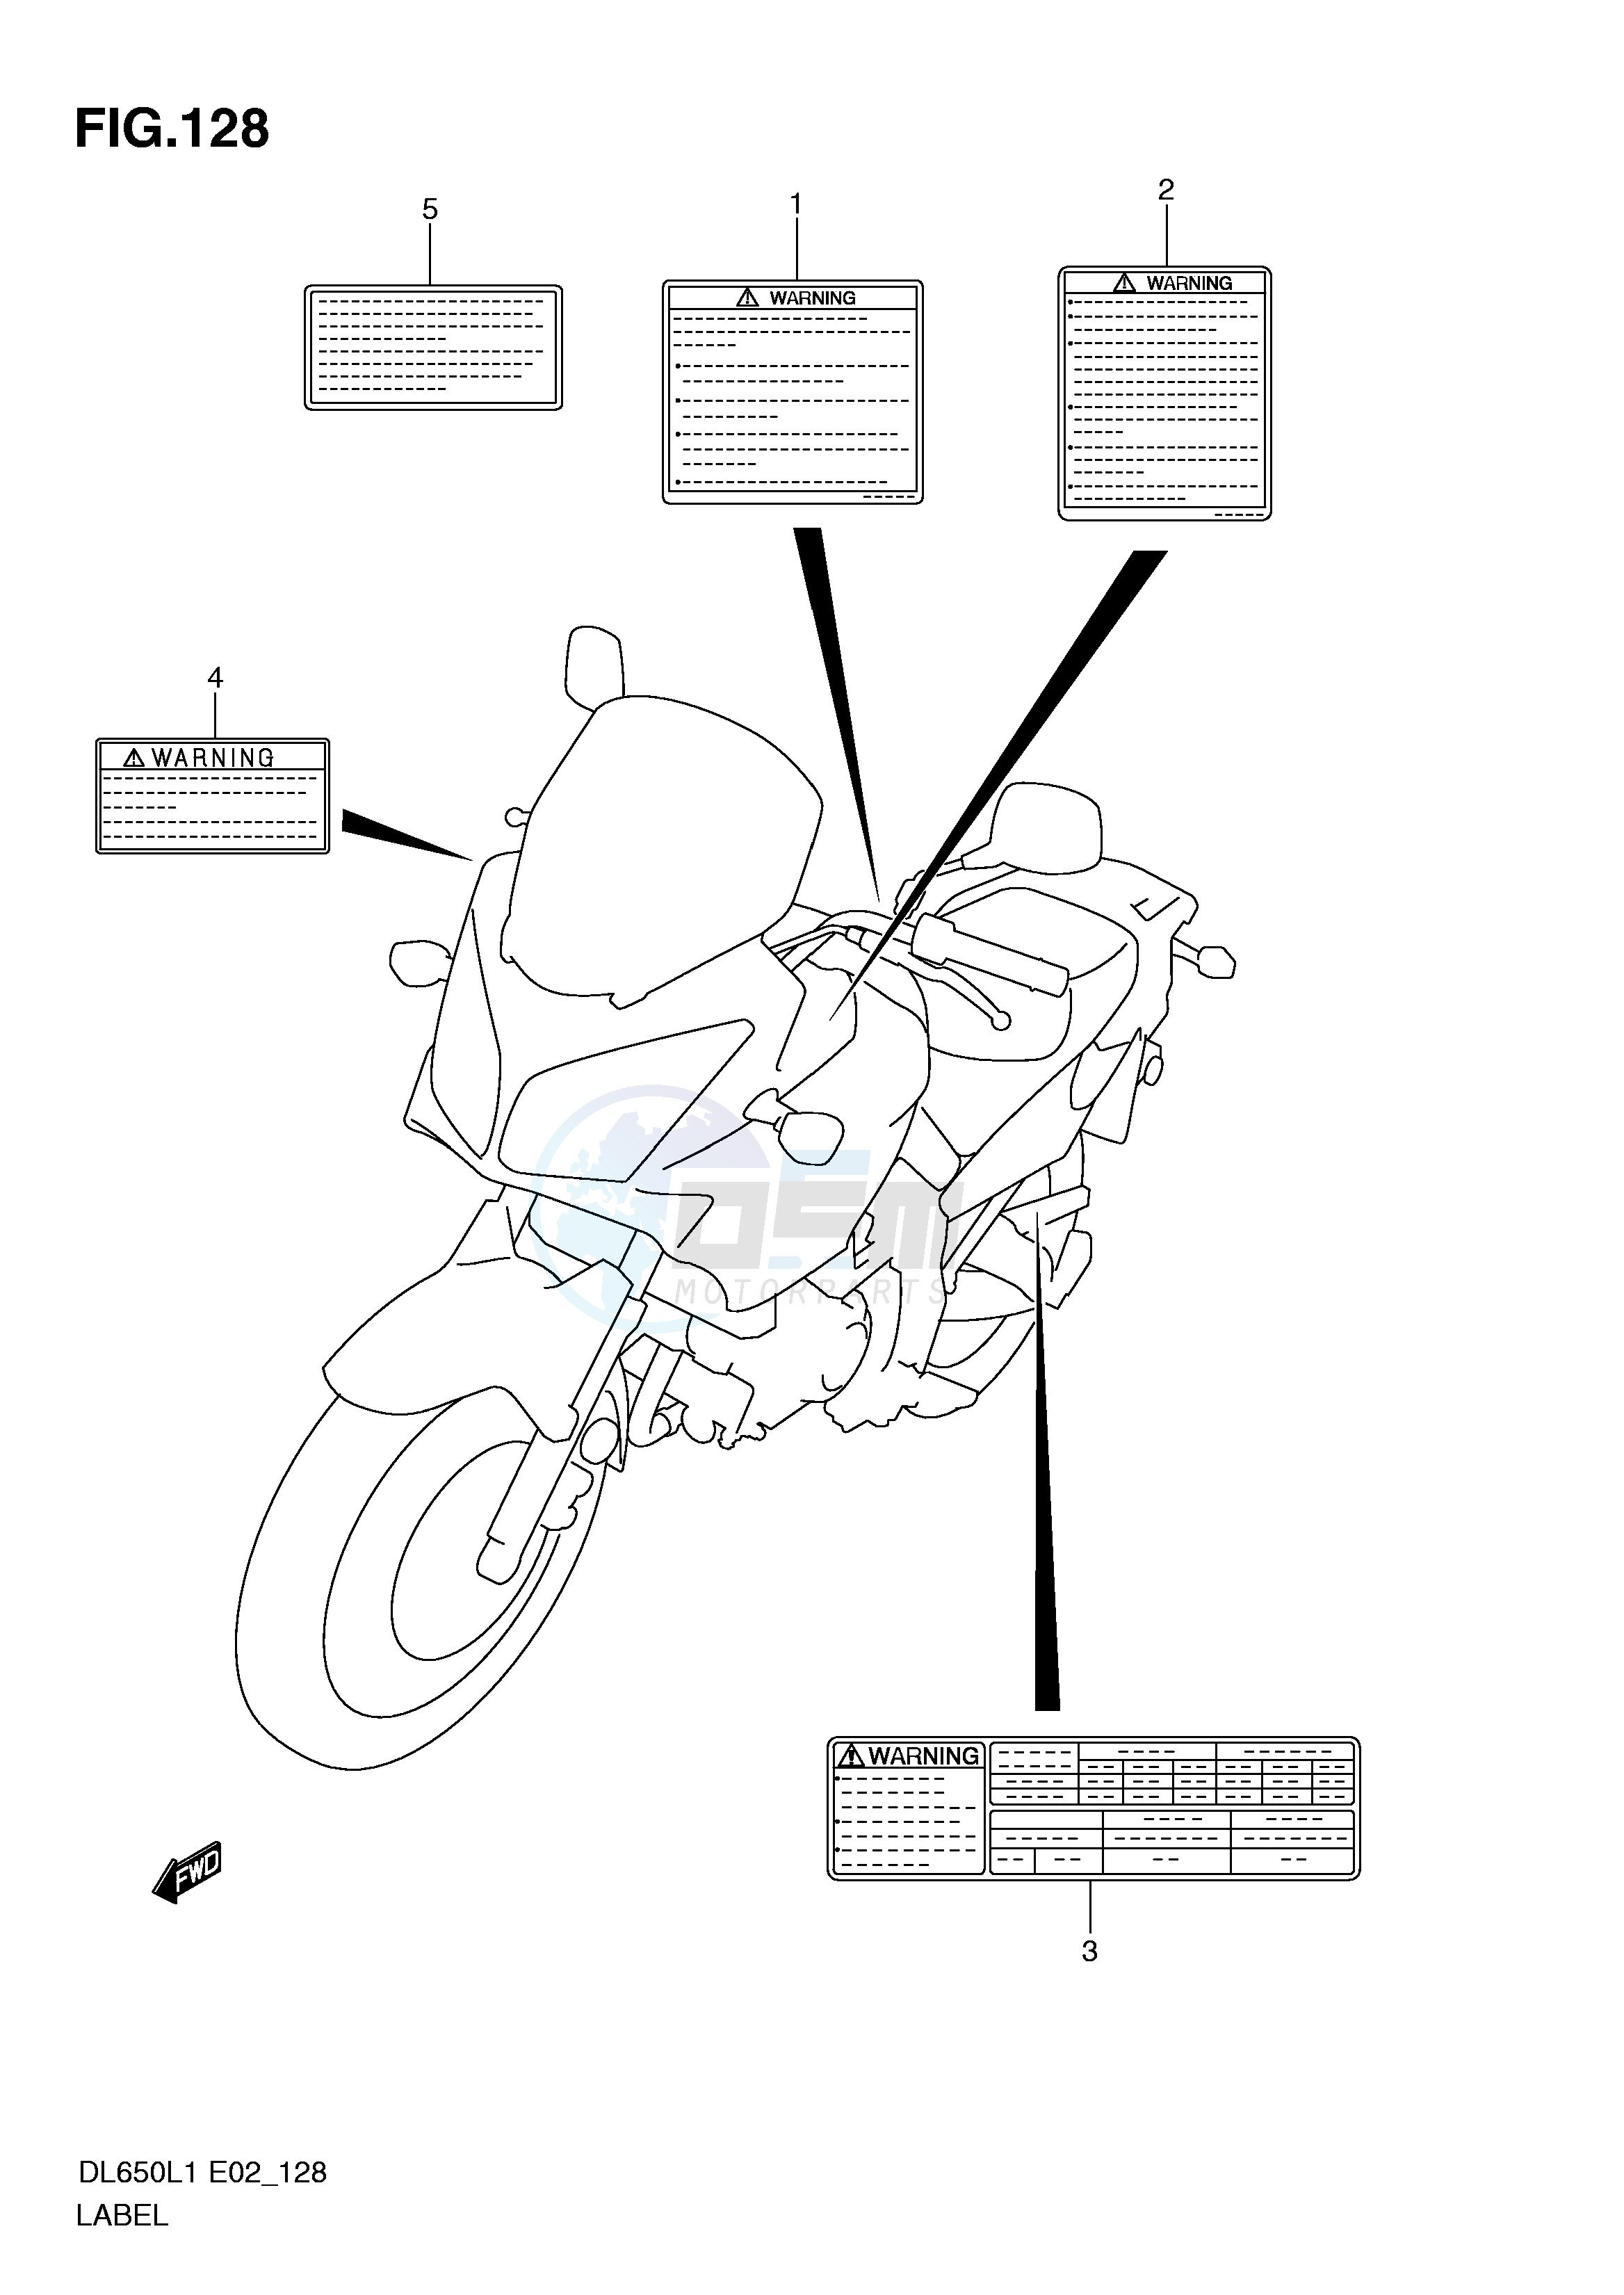 LABEL (DL650AUEL1 E19) blueprint